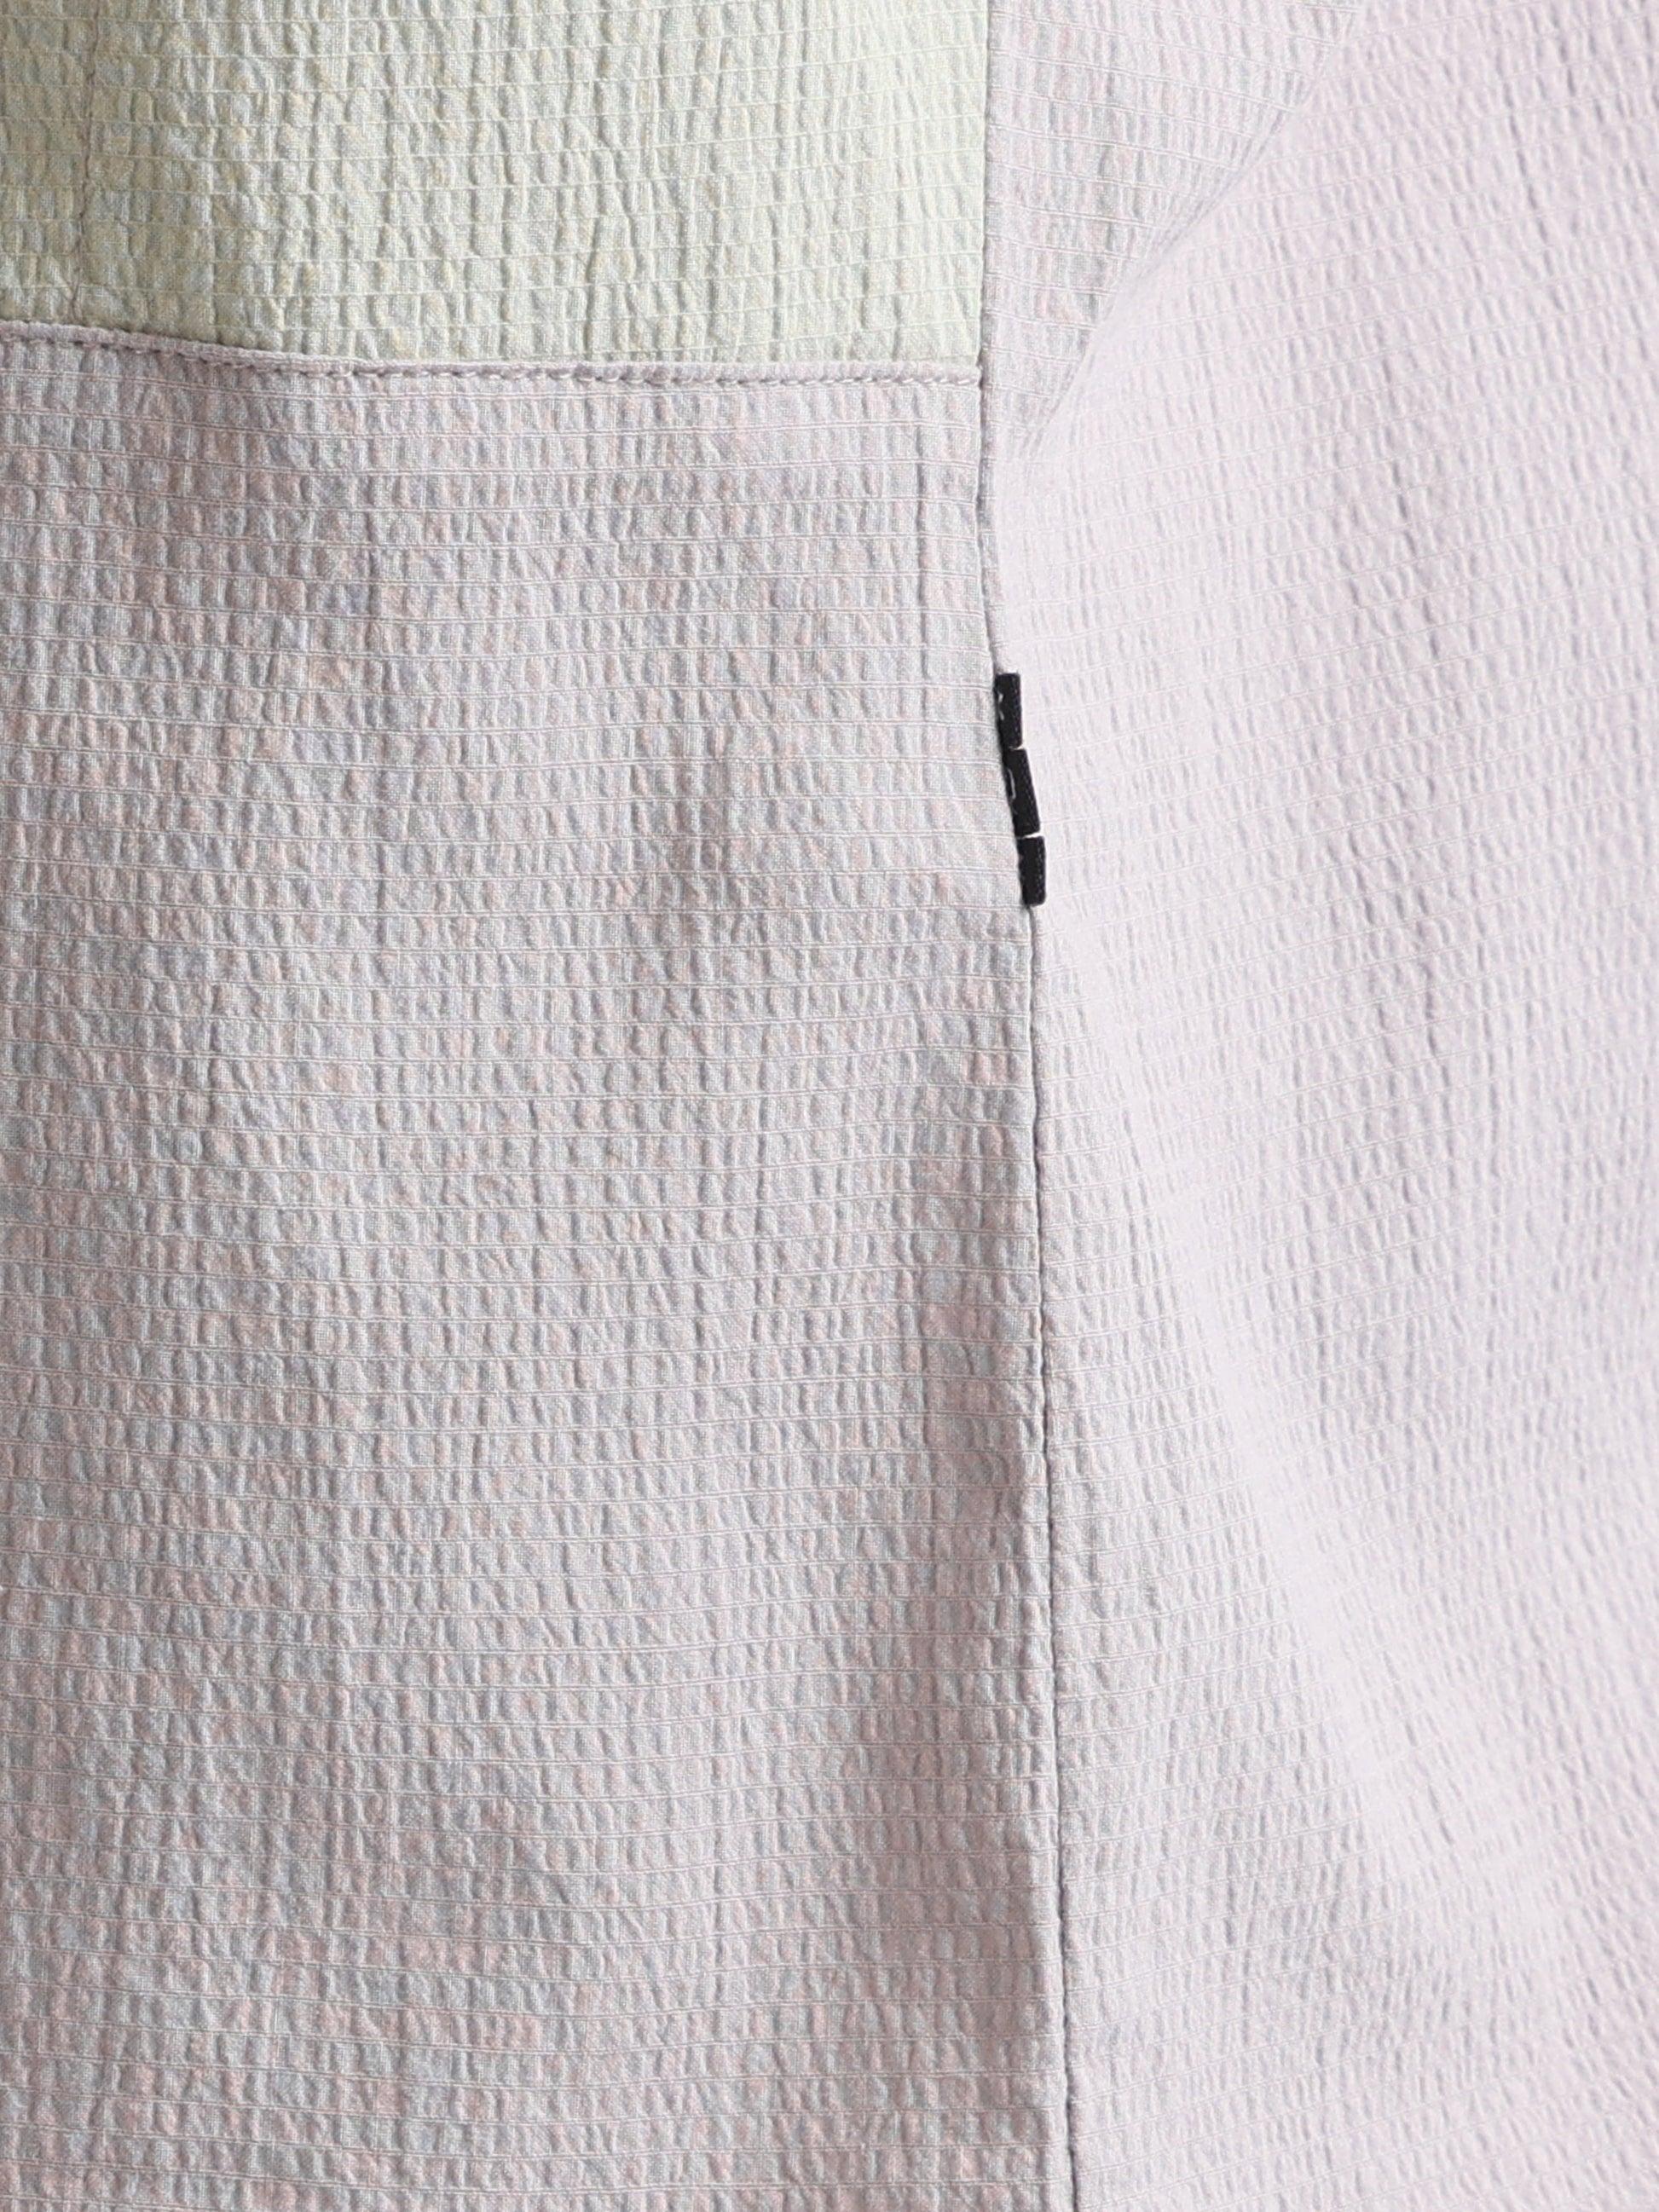 Buy Crushed Panel Stylish Shirt Online.